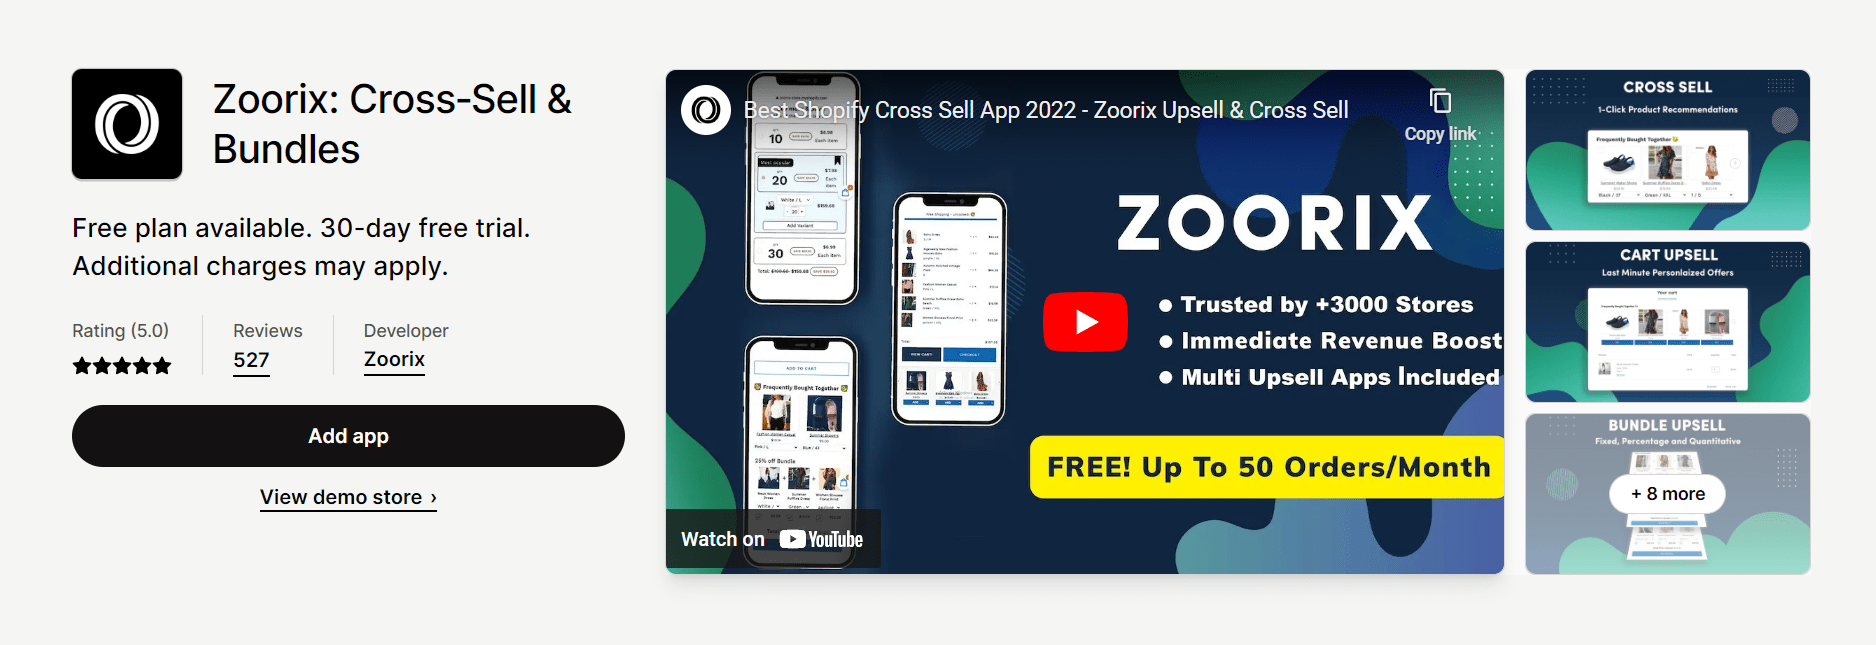 Zoorix 交叉销售